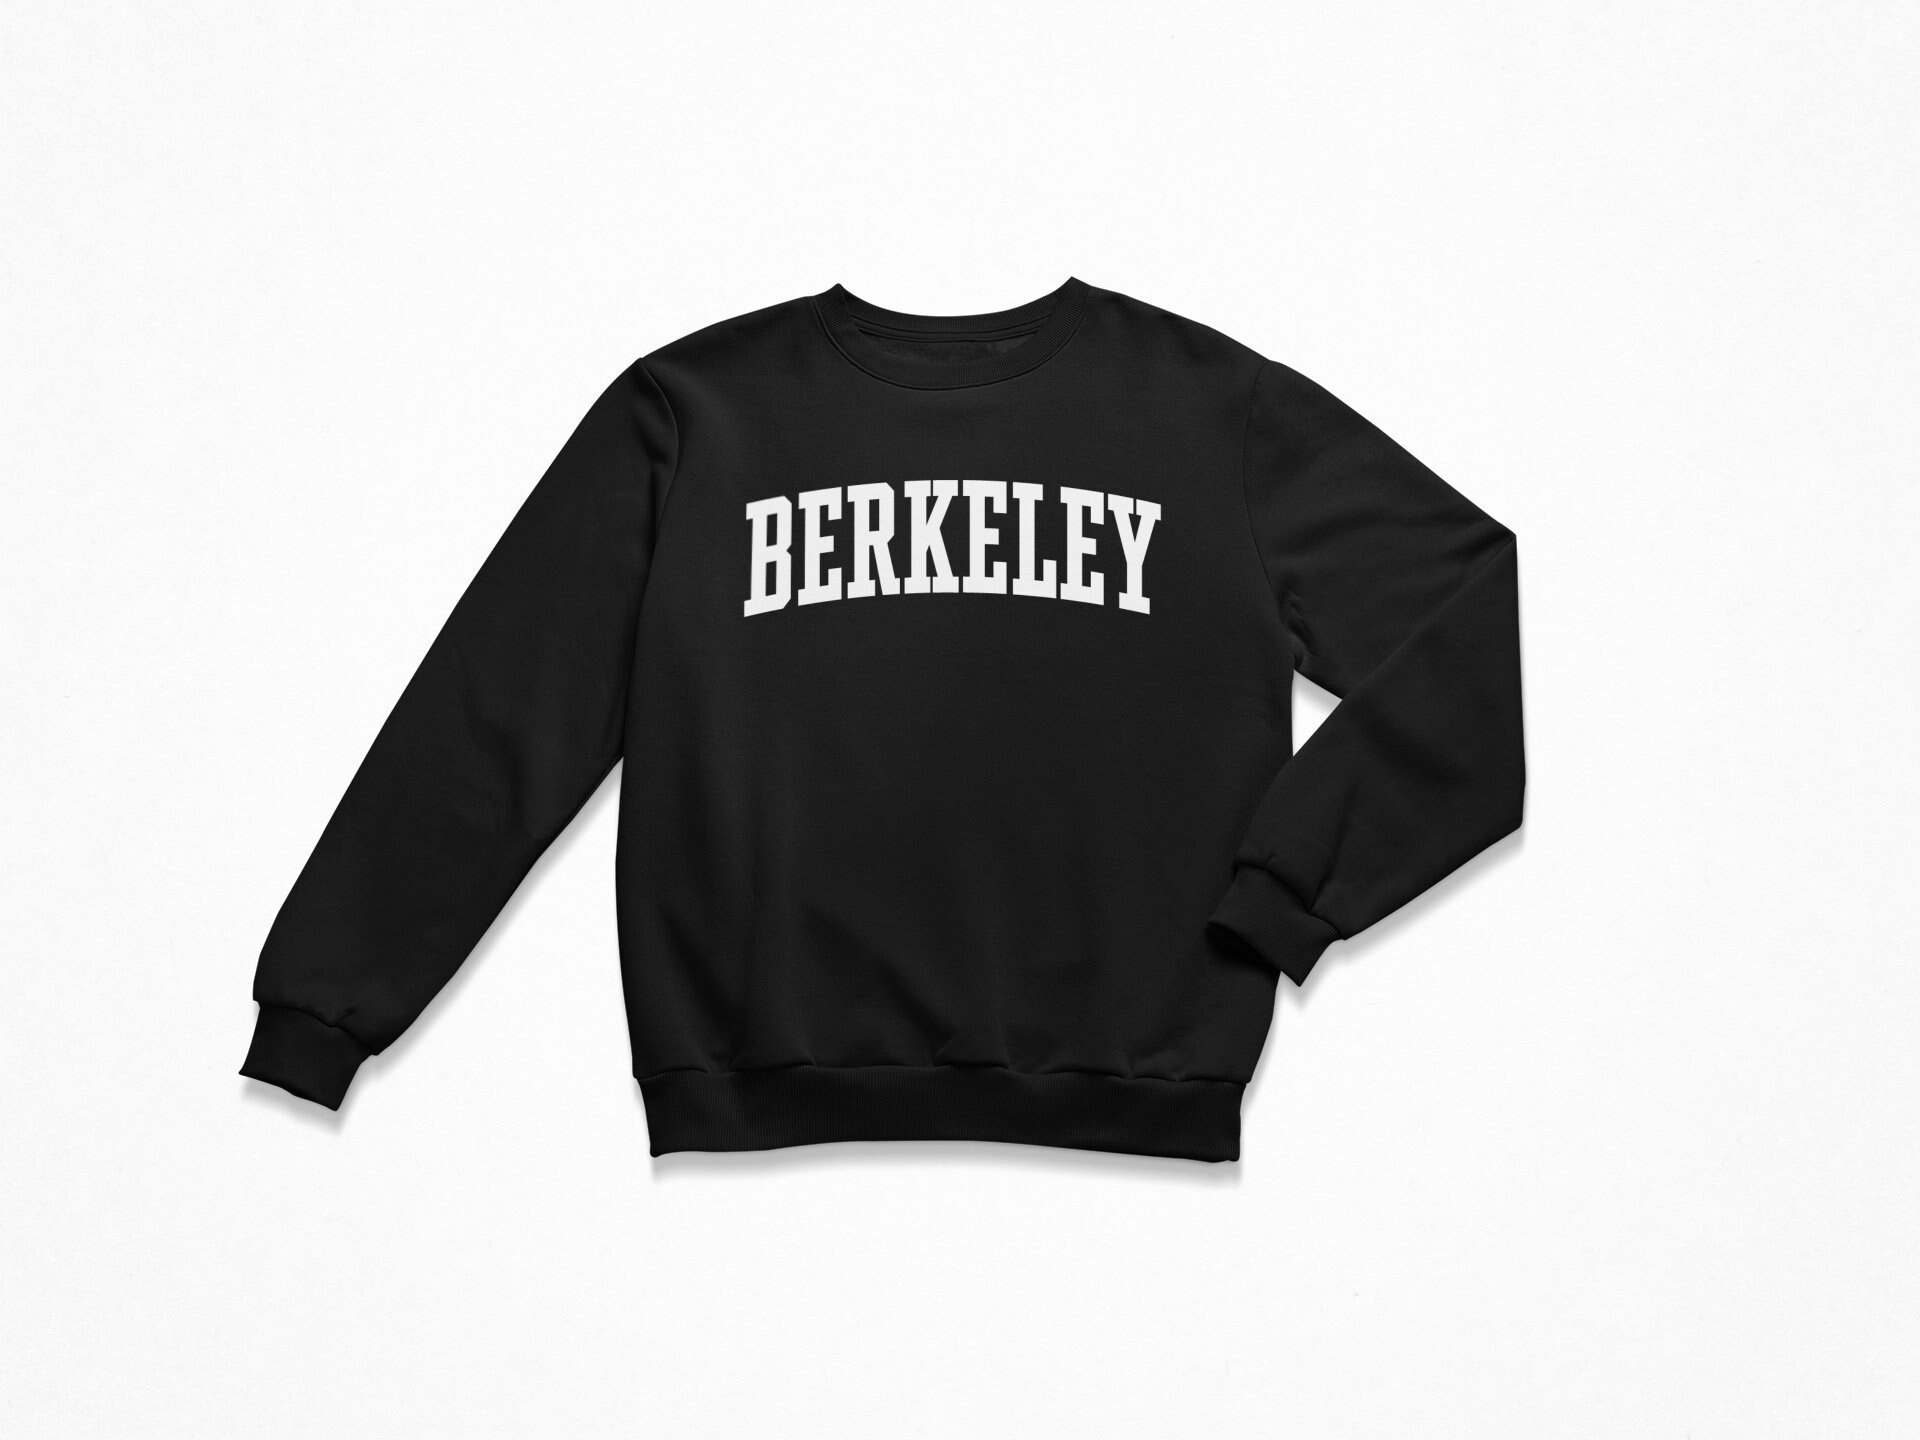 Berkeley Sweatshirt / Berkeley California Sweatshirt / College | Etsy